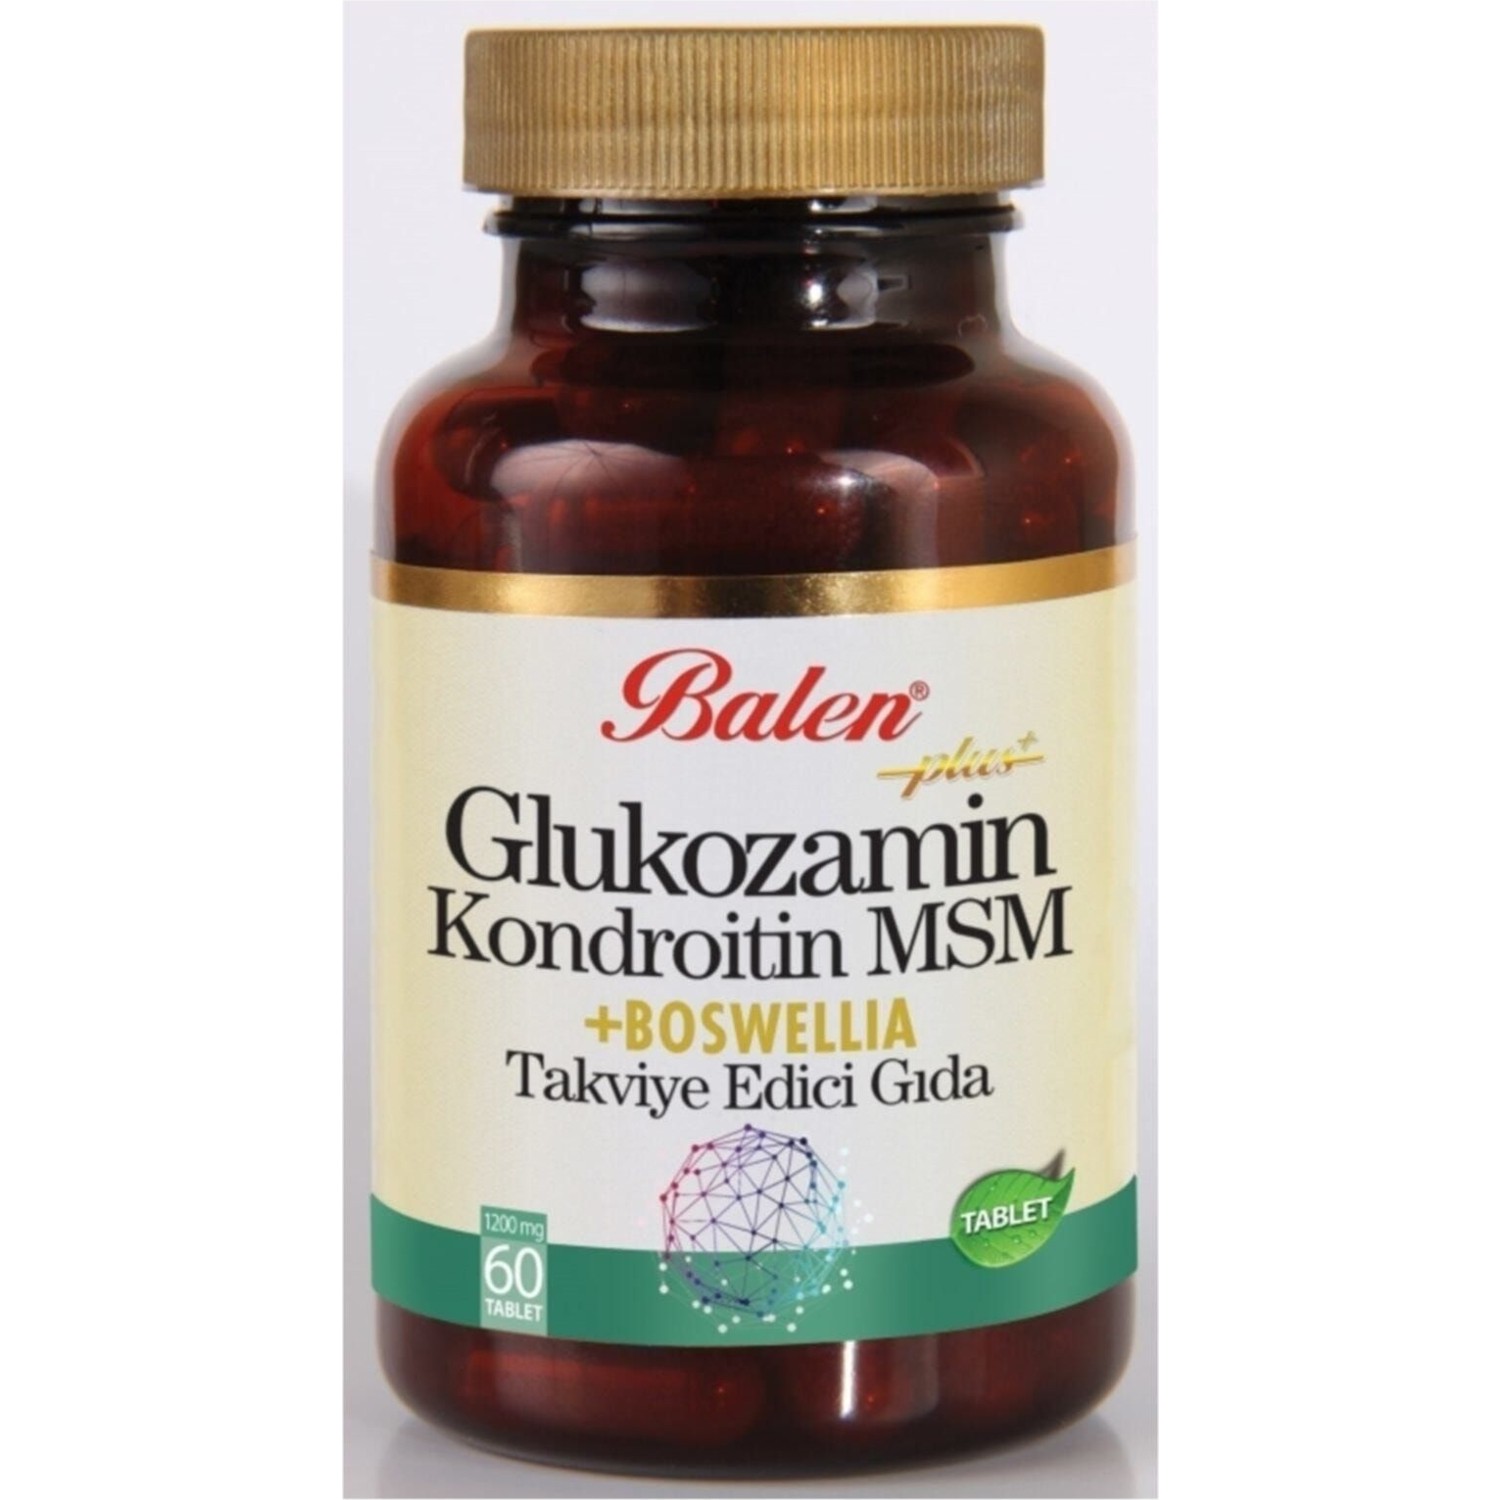 Активная добавка глюкозамин Balen Chondroitin Msm и Boswellia, 60 капсул, 1200 мг активная добавка глюкозамин balen chondroitin msm capsules 120 капсул 970 мг